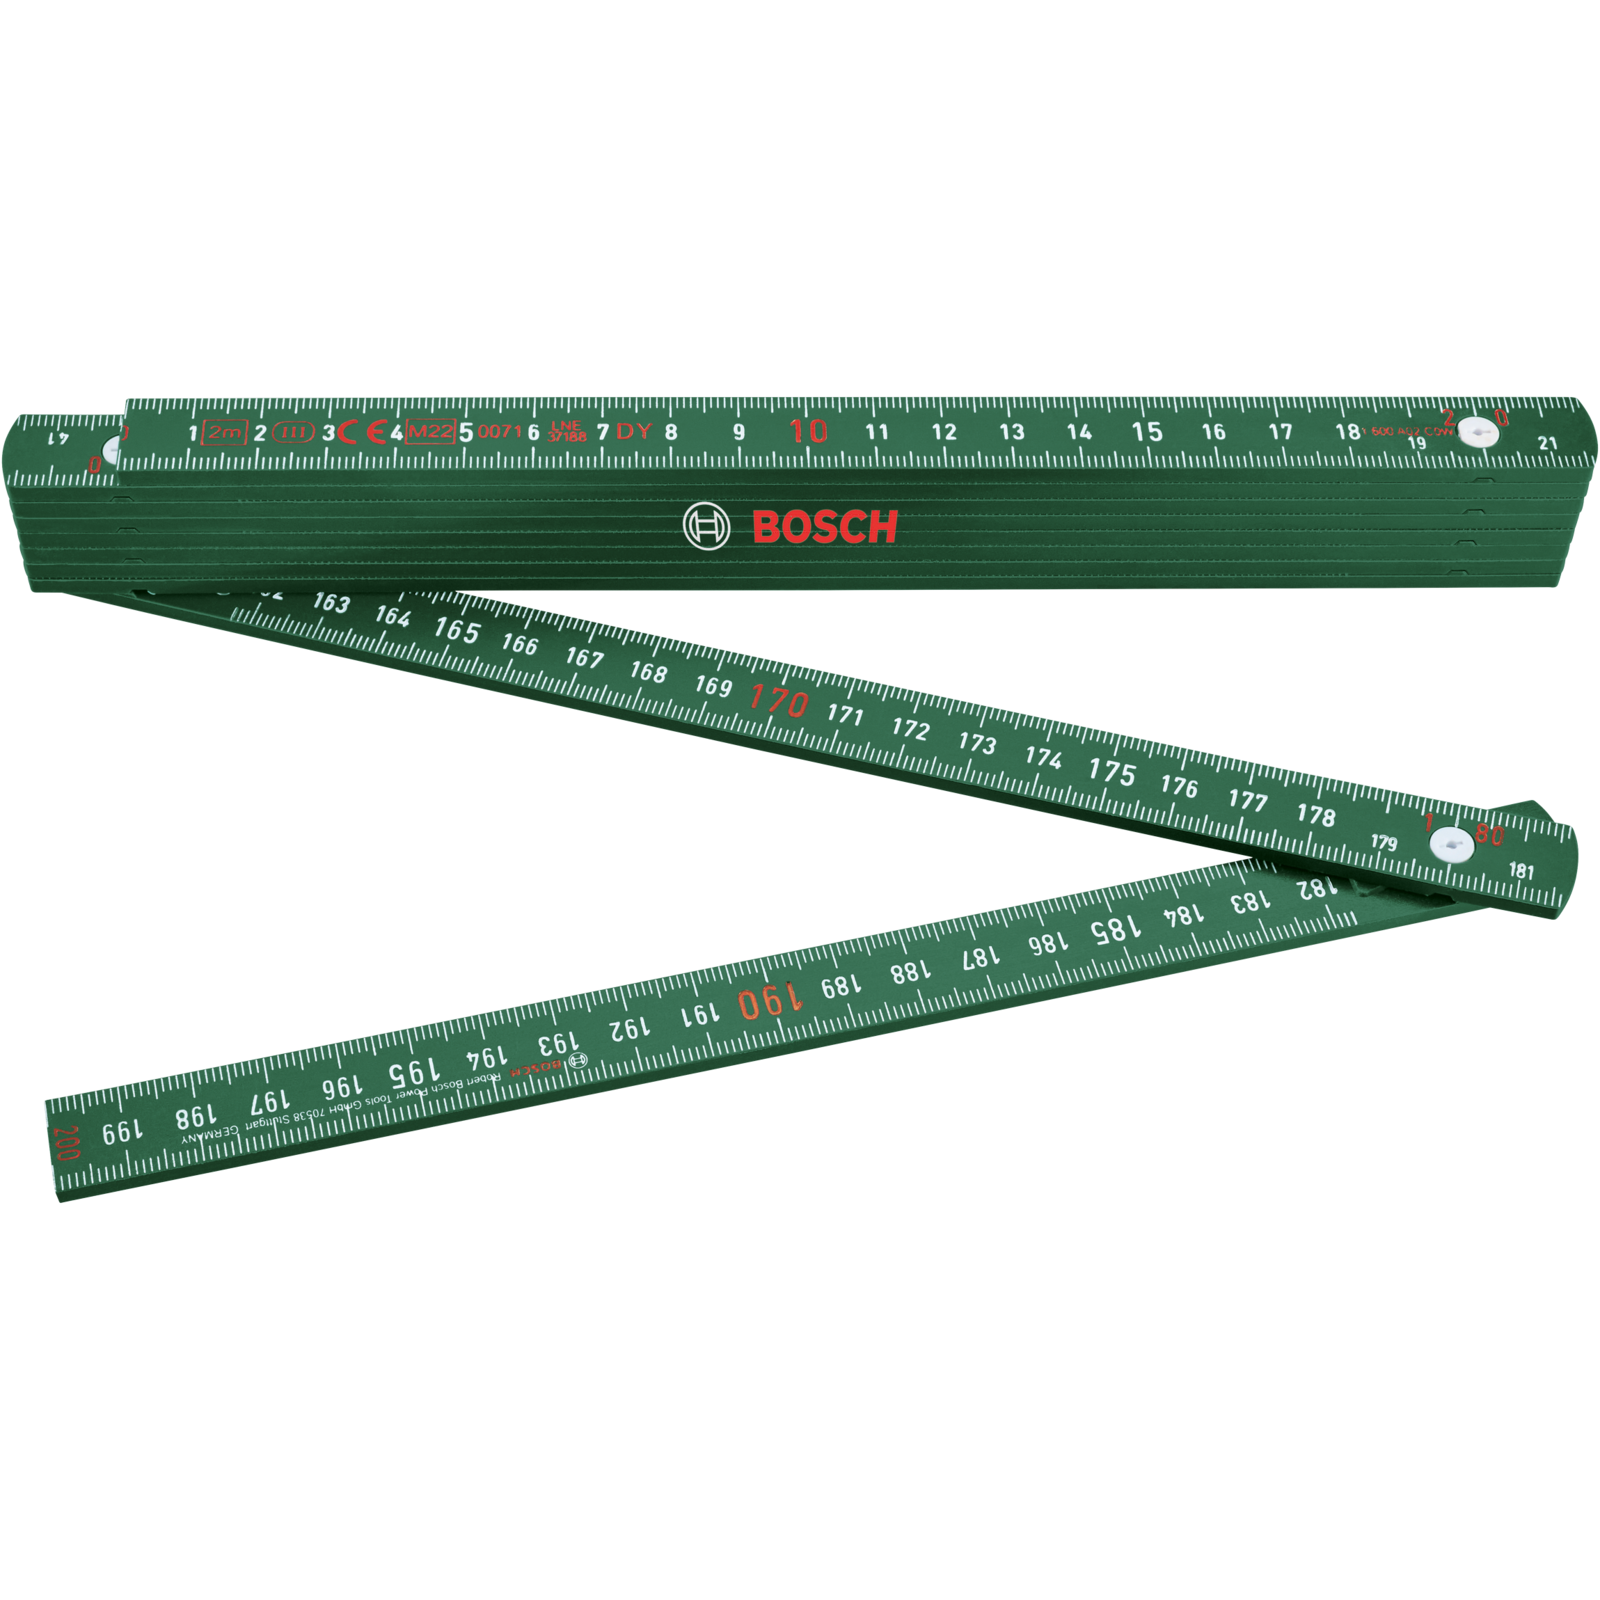 Bosch DIY Folding Ruler 2m 1600A02ET4